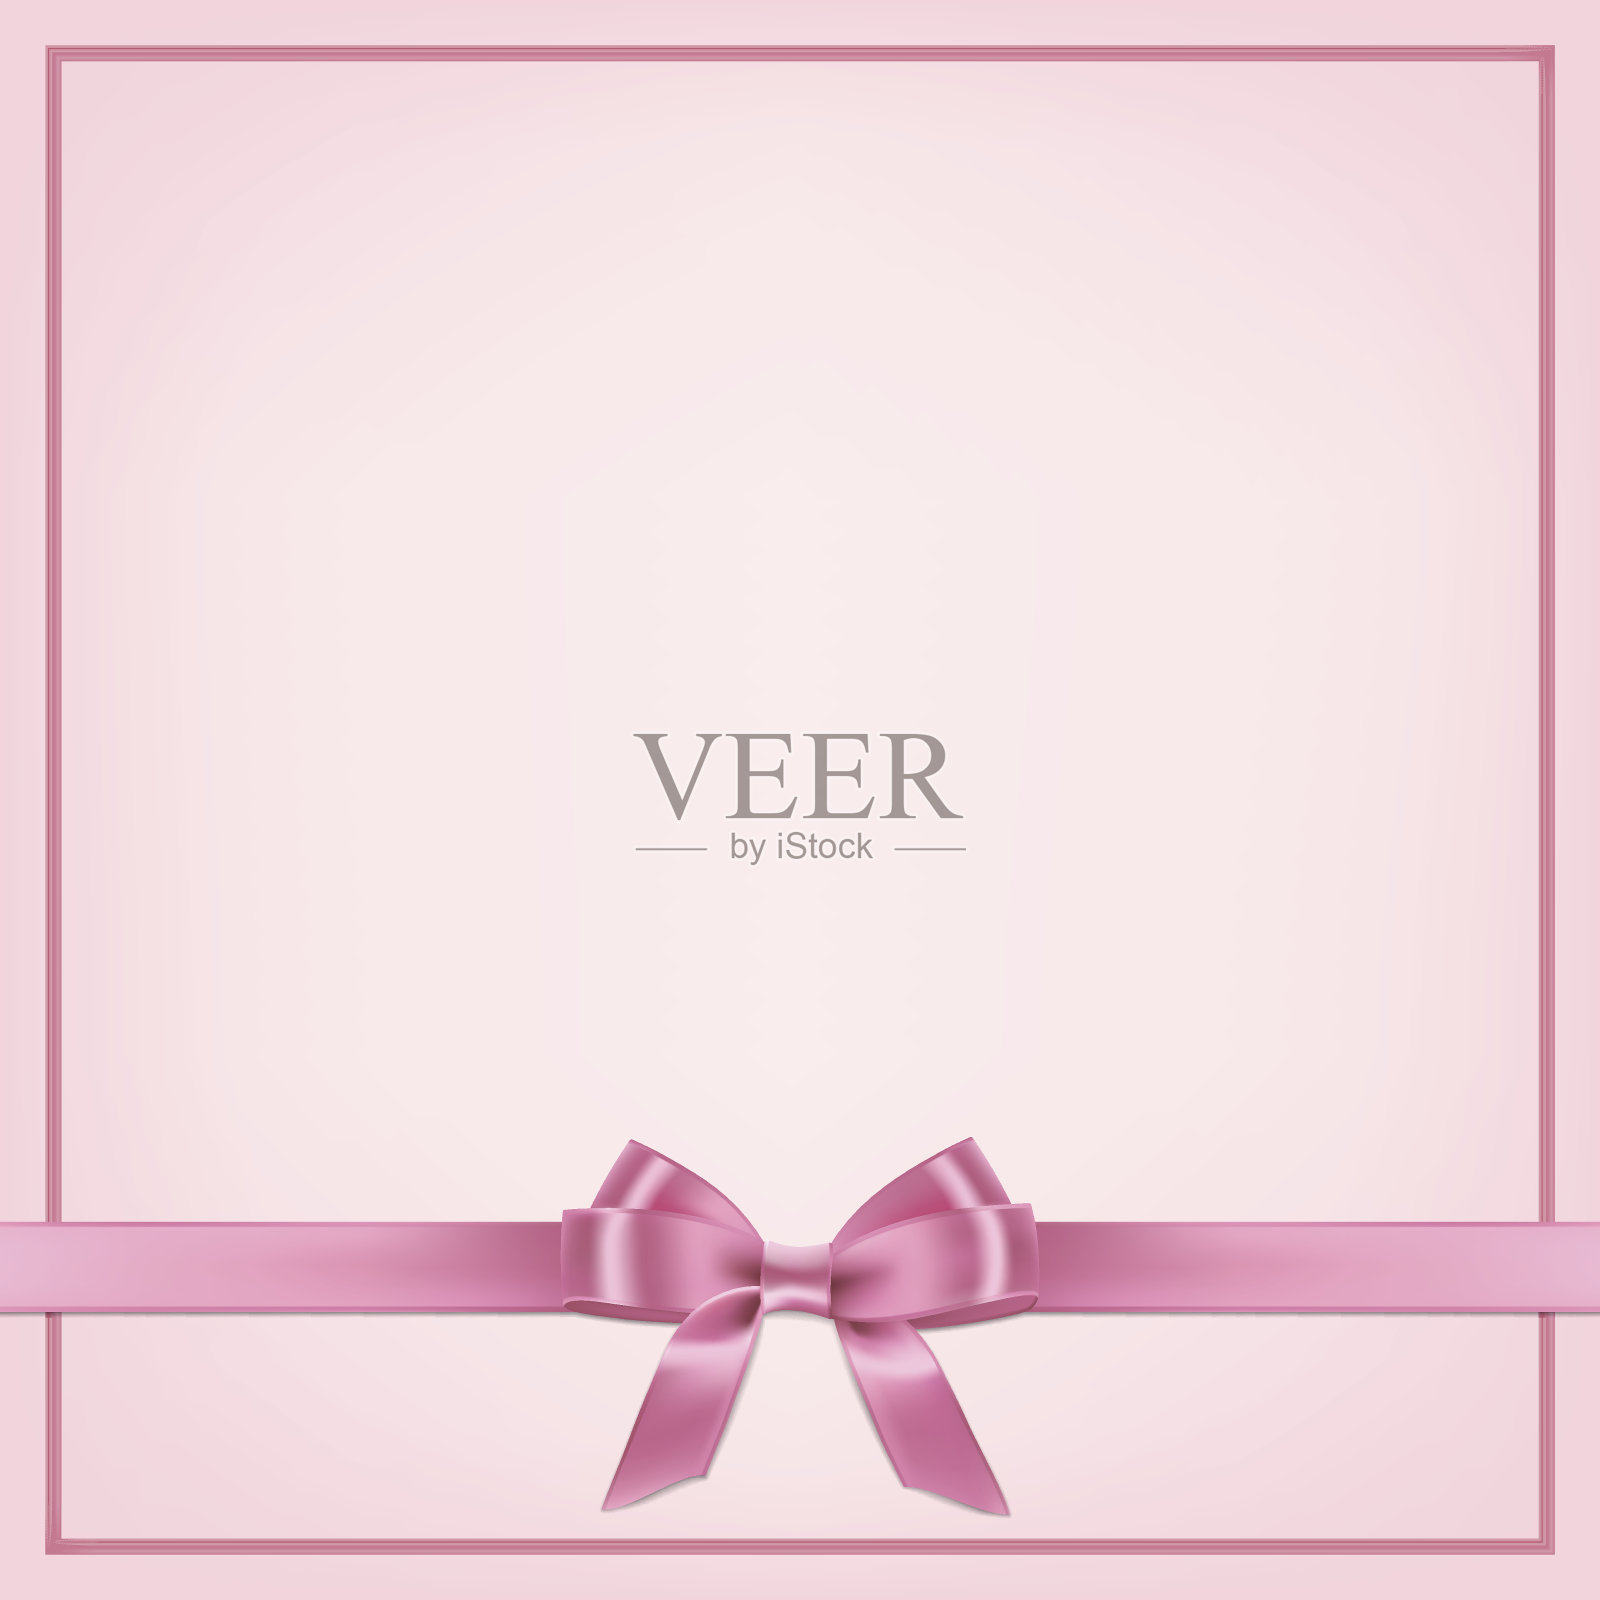 向量现实的粉红色明信片模板与丝带和蝴蝶结。插画图片素材